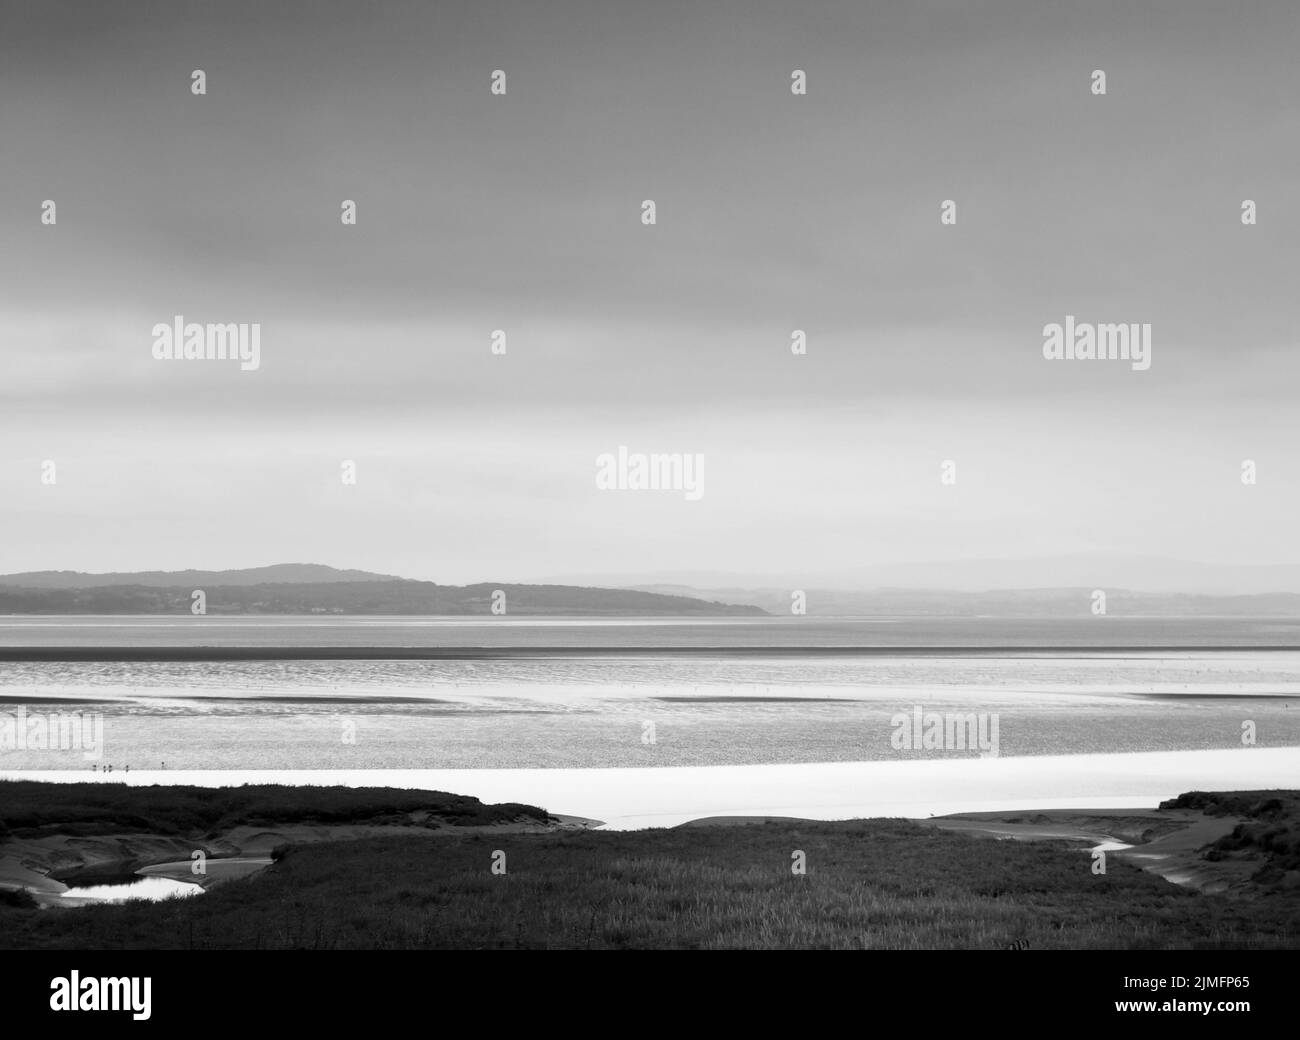 Vue atmosphérique monochrome de la côte de grange sur les sables de cumbria avec une zone humide recouverte d'herbe au premier plan et le no Banque D'Images